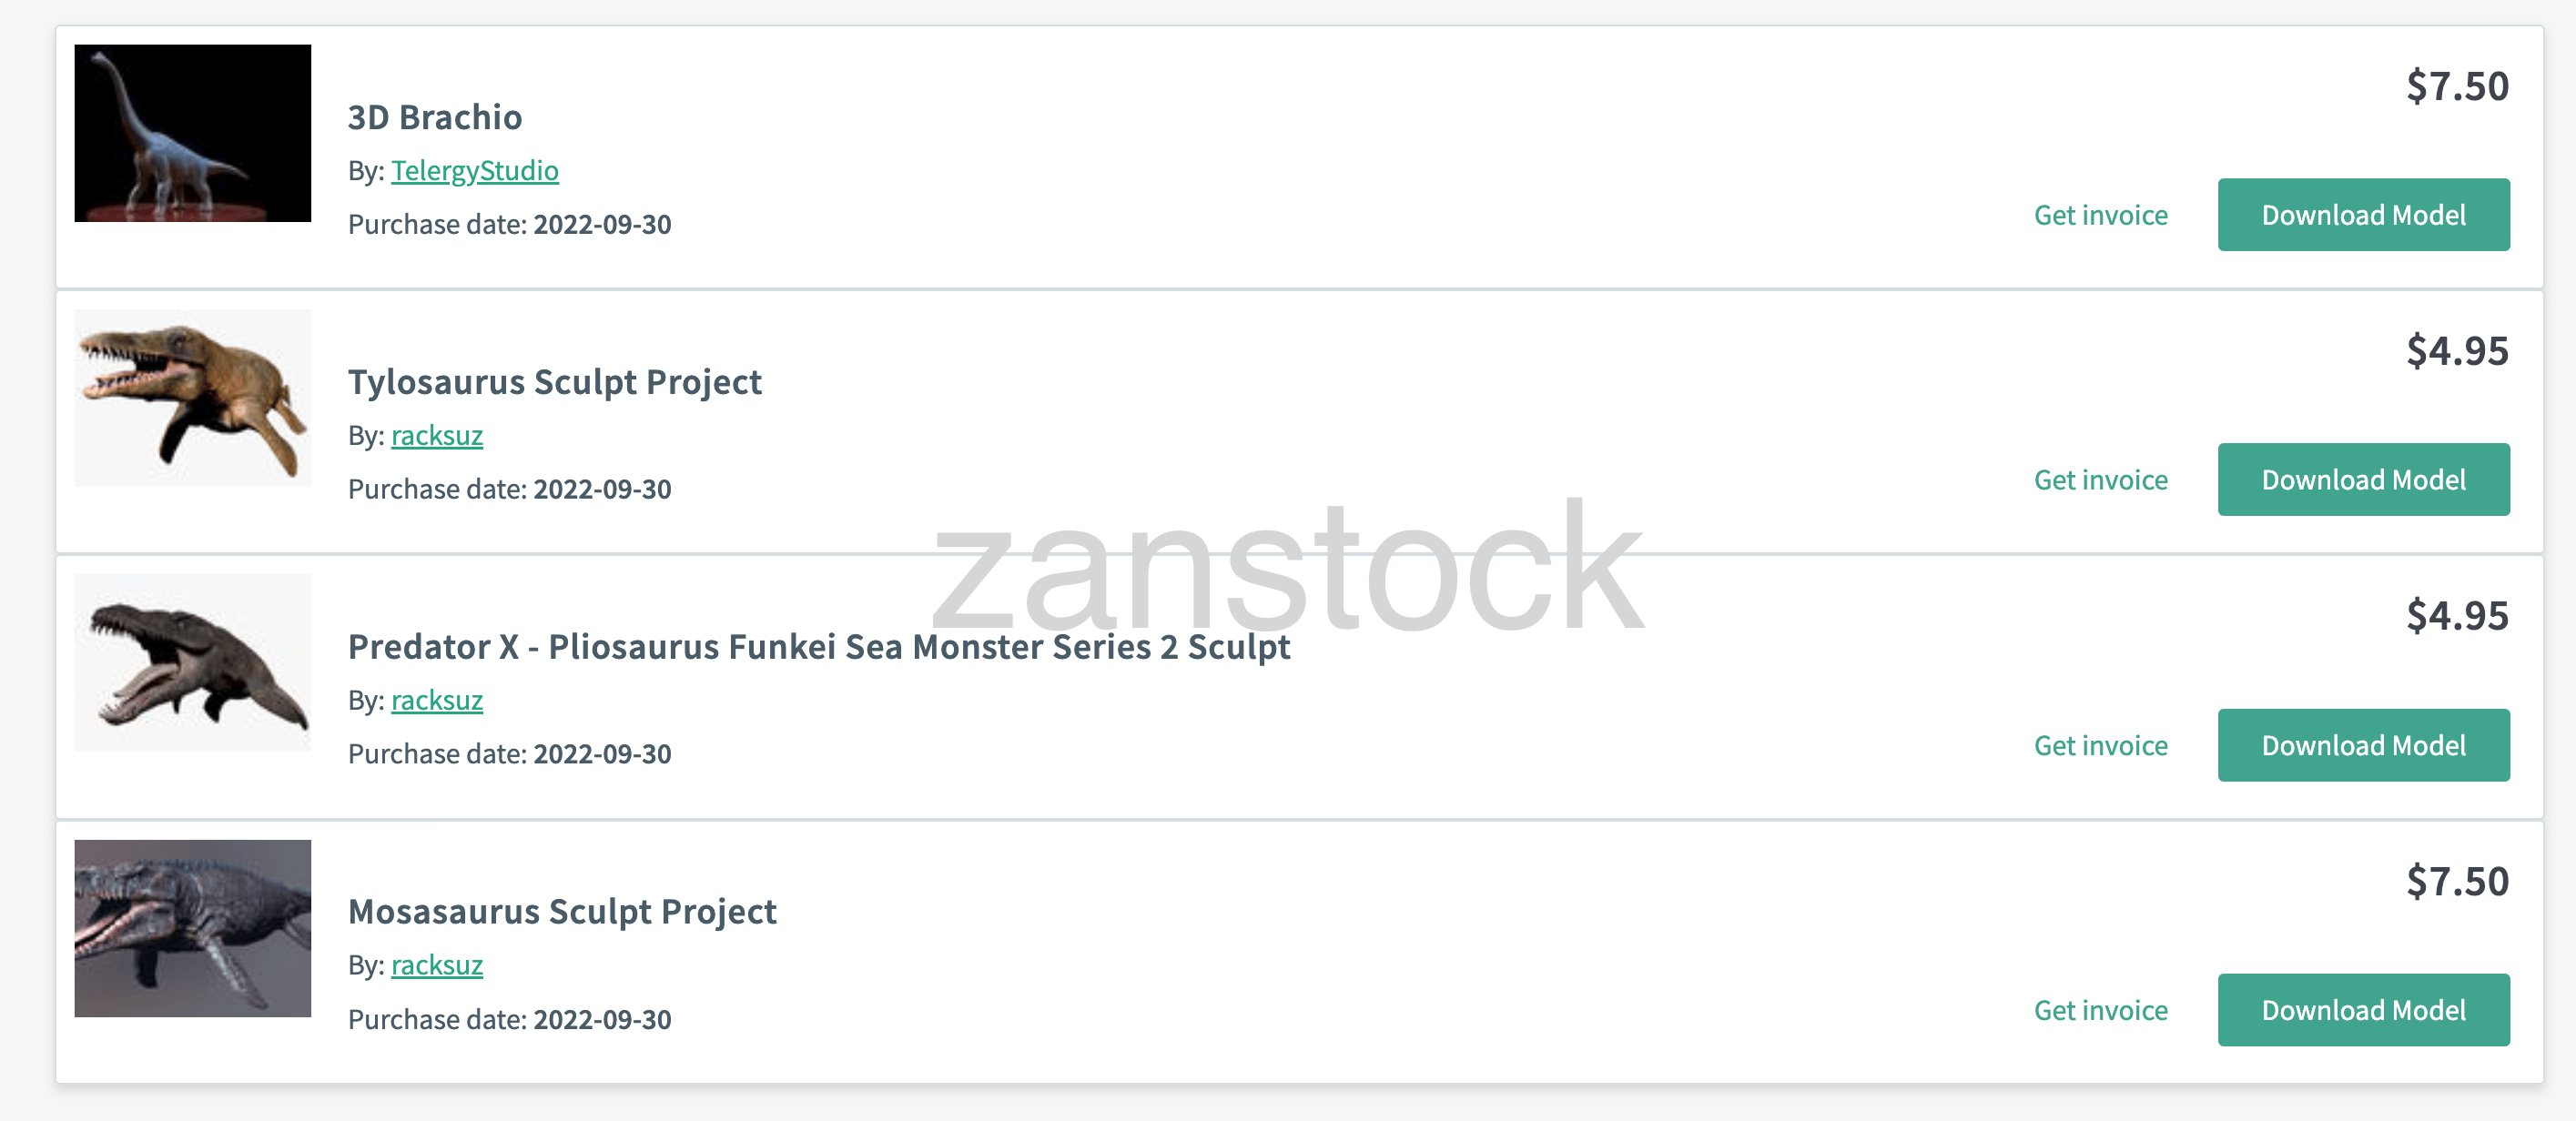 mua model 3d cgtrader gia re zanstock 2022 3 min - Zan Stock